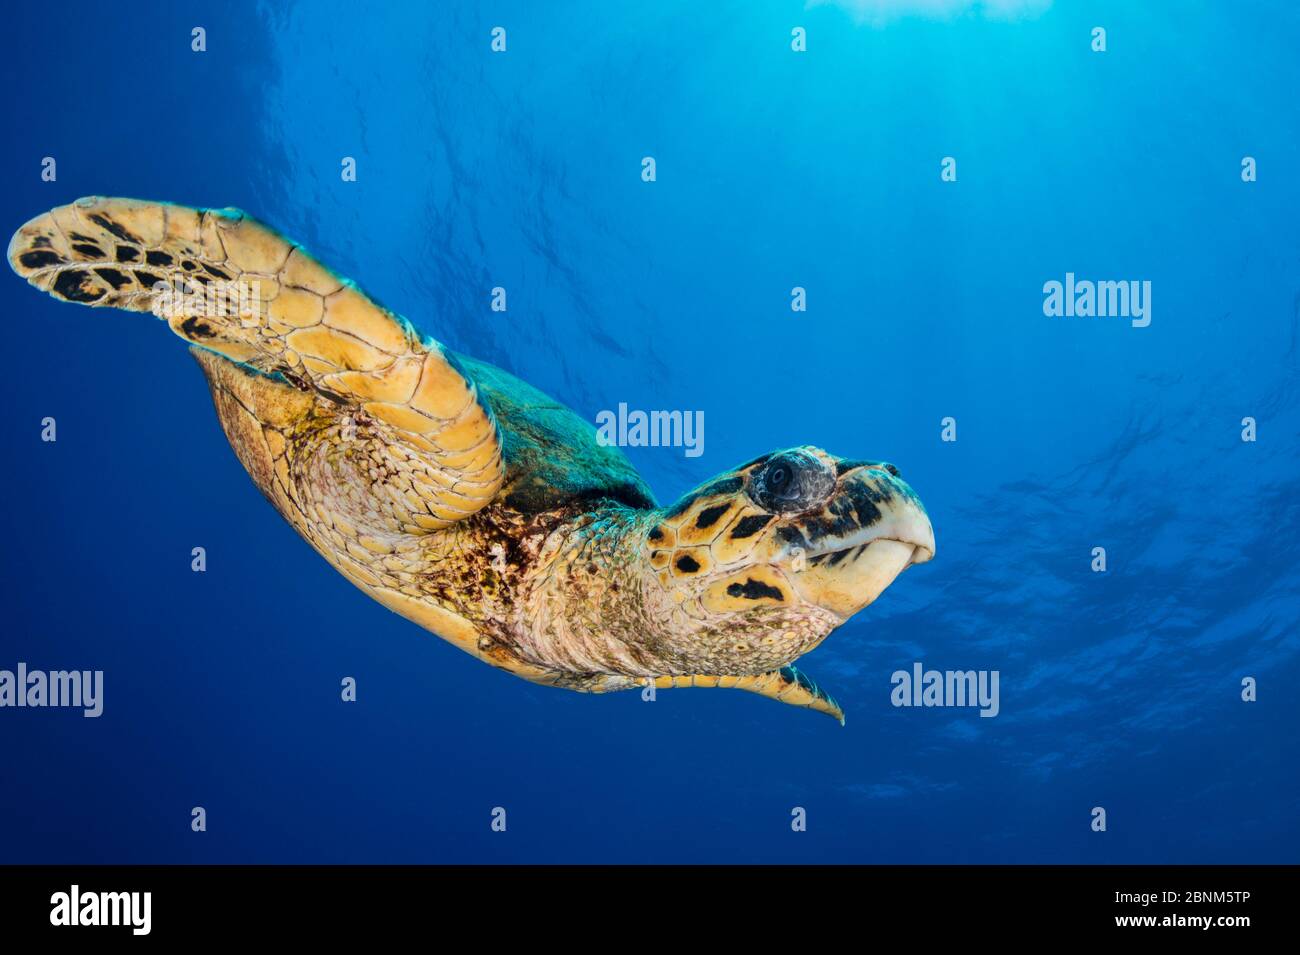 La tartaruga marina di Hawksbill (Eretmochelys imbricata) scende attraverso l'acqua blu. Abu Nuhas, Egitto. Stretto di Gubal, Golfo di Suez, Mar Rosso. Foto Stock